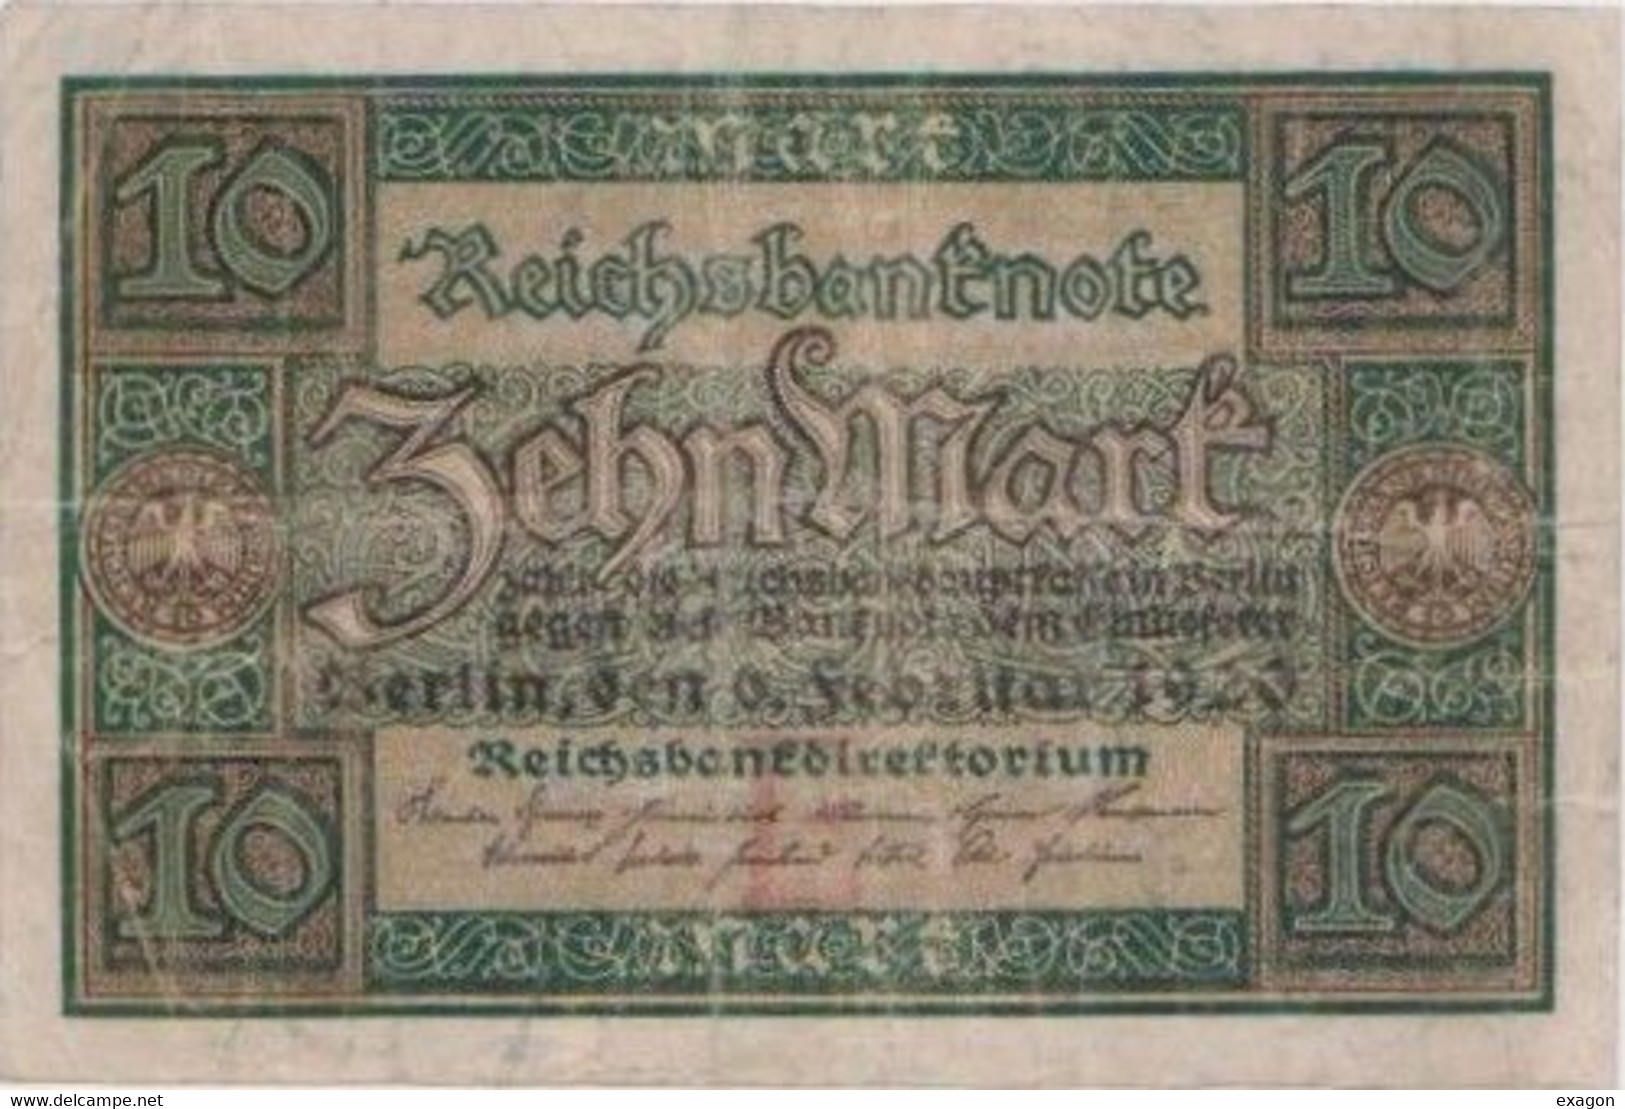 Lotto Di N. 2 Banconote GERMANIA  - Banconota Da  5  FUNF  MARK  -  Anno  1917. - Banconota Da 10 ZEHINFMART - Anno 1920 - 5 Mark